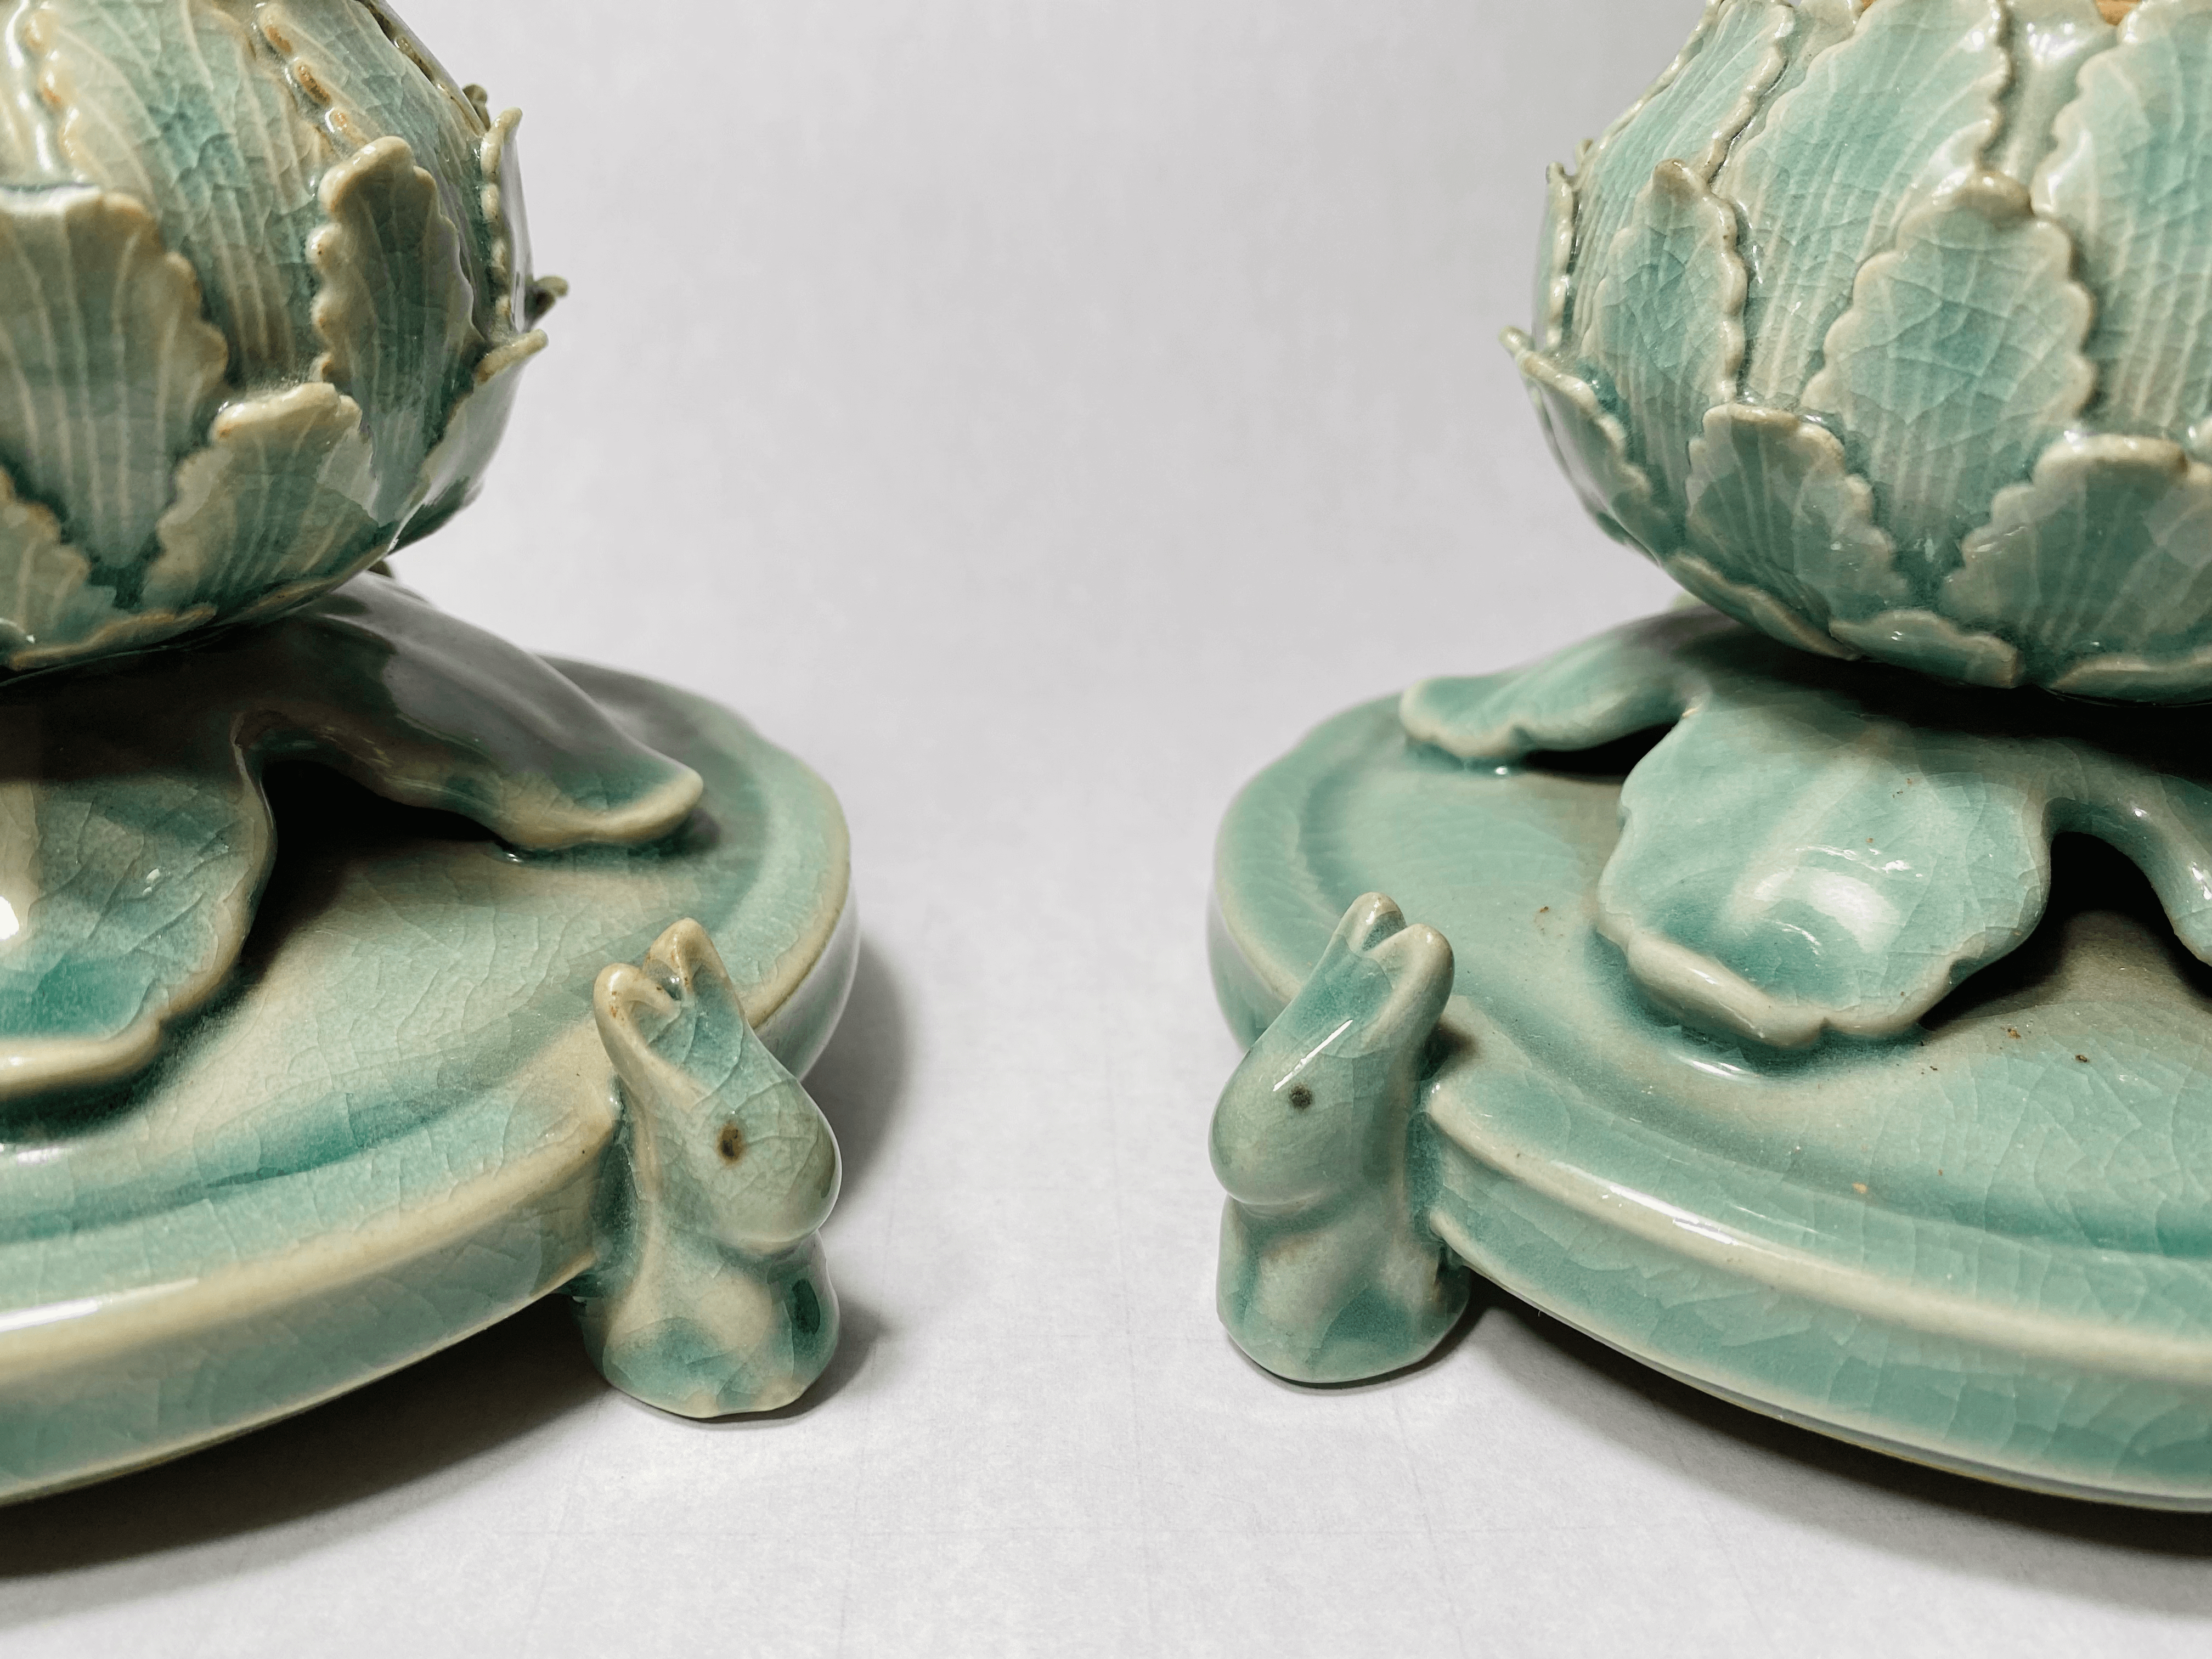 Antique Korean Celadon Reticulated Censers